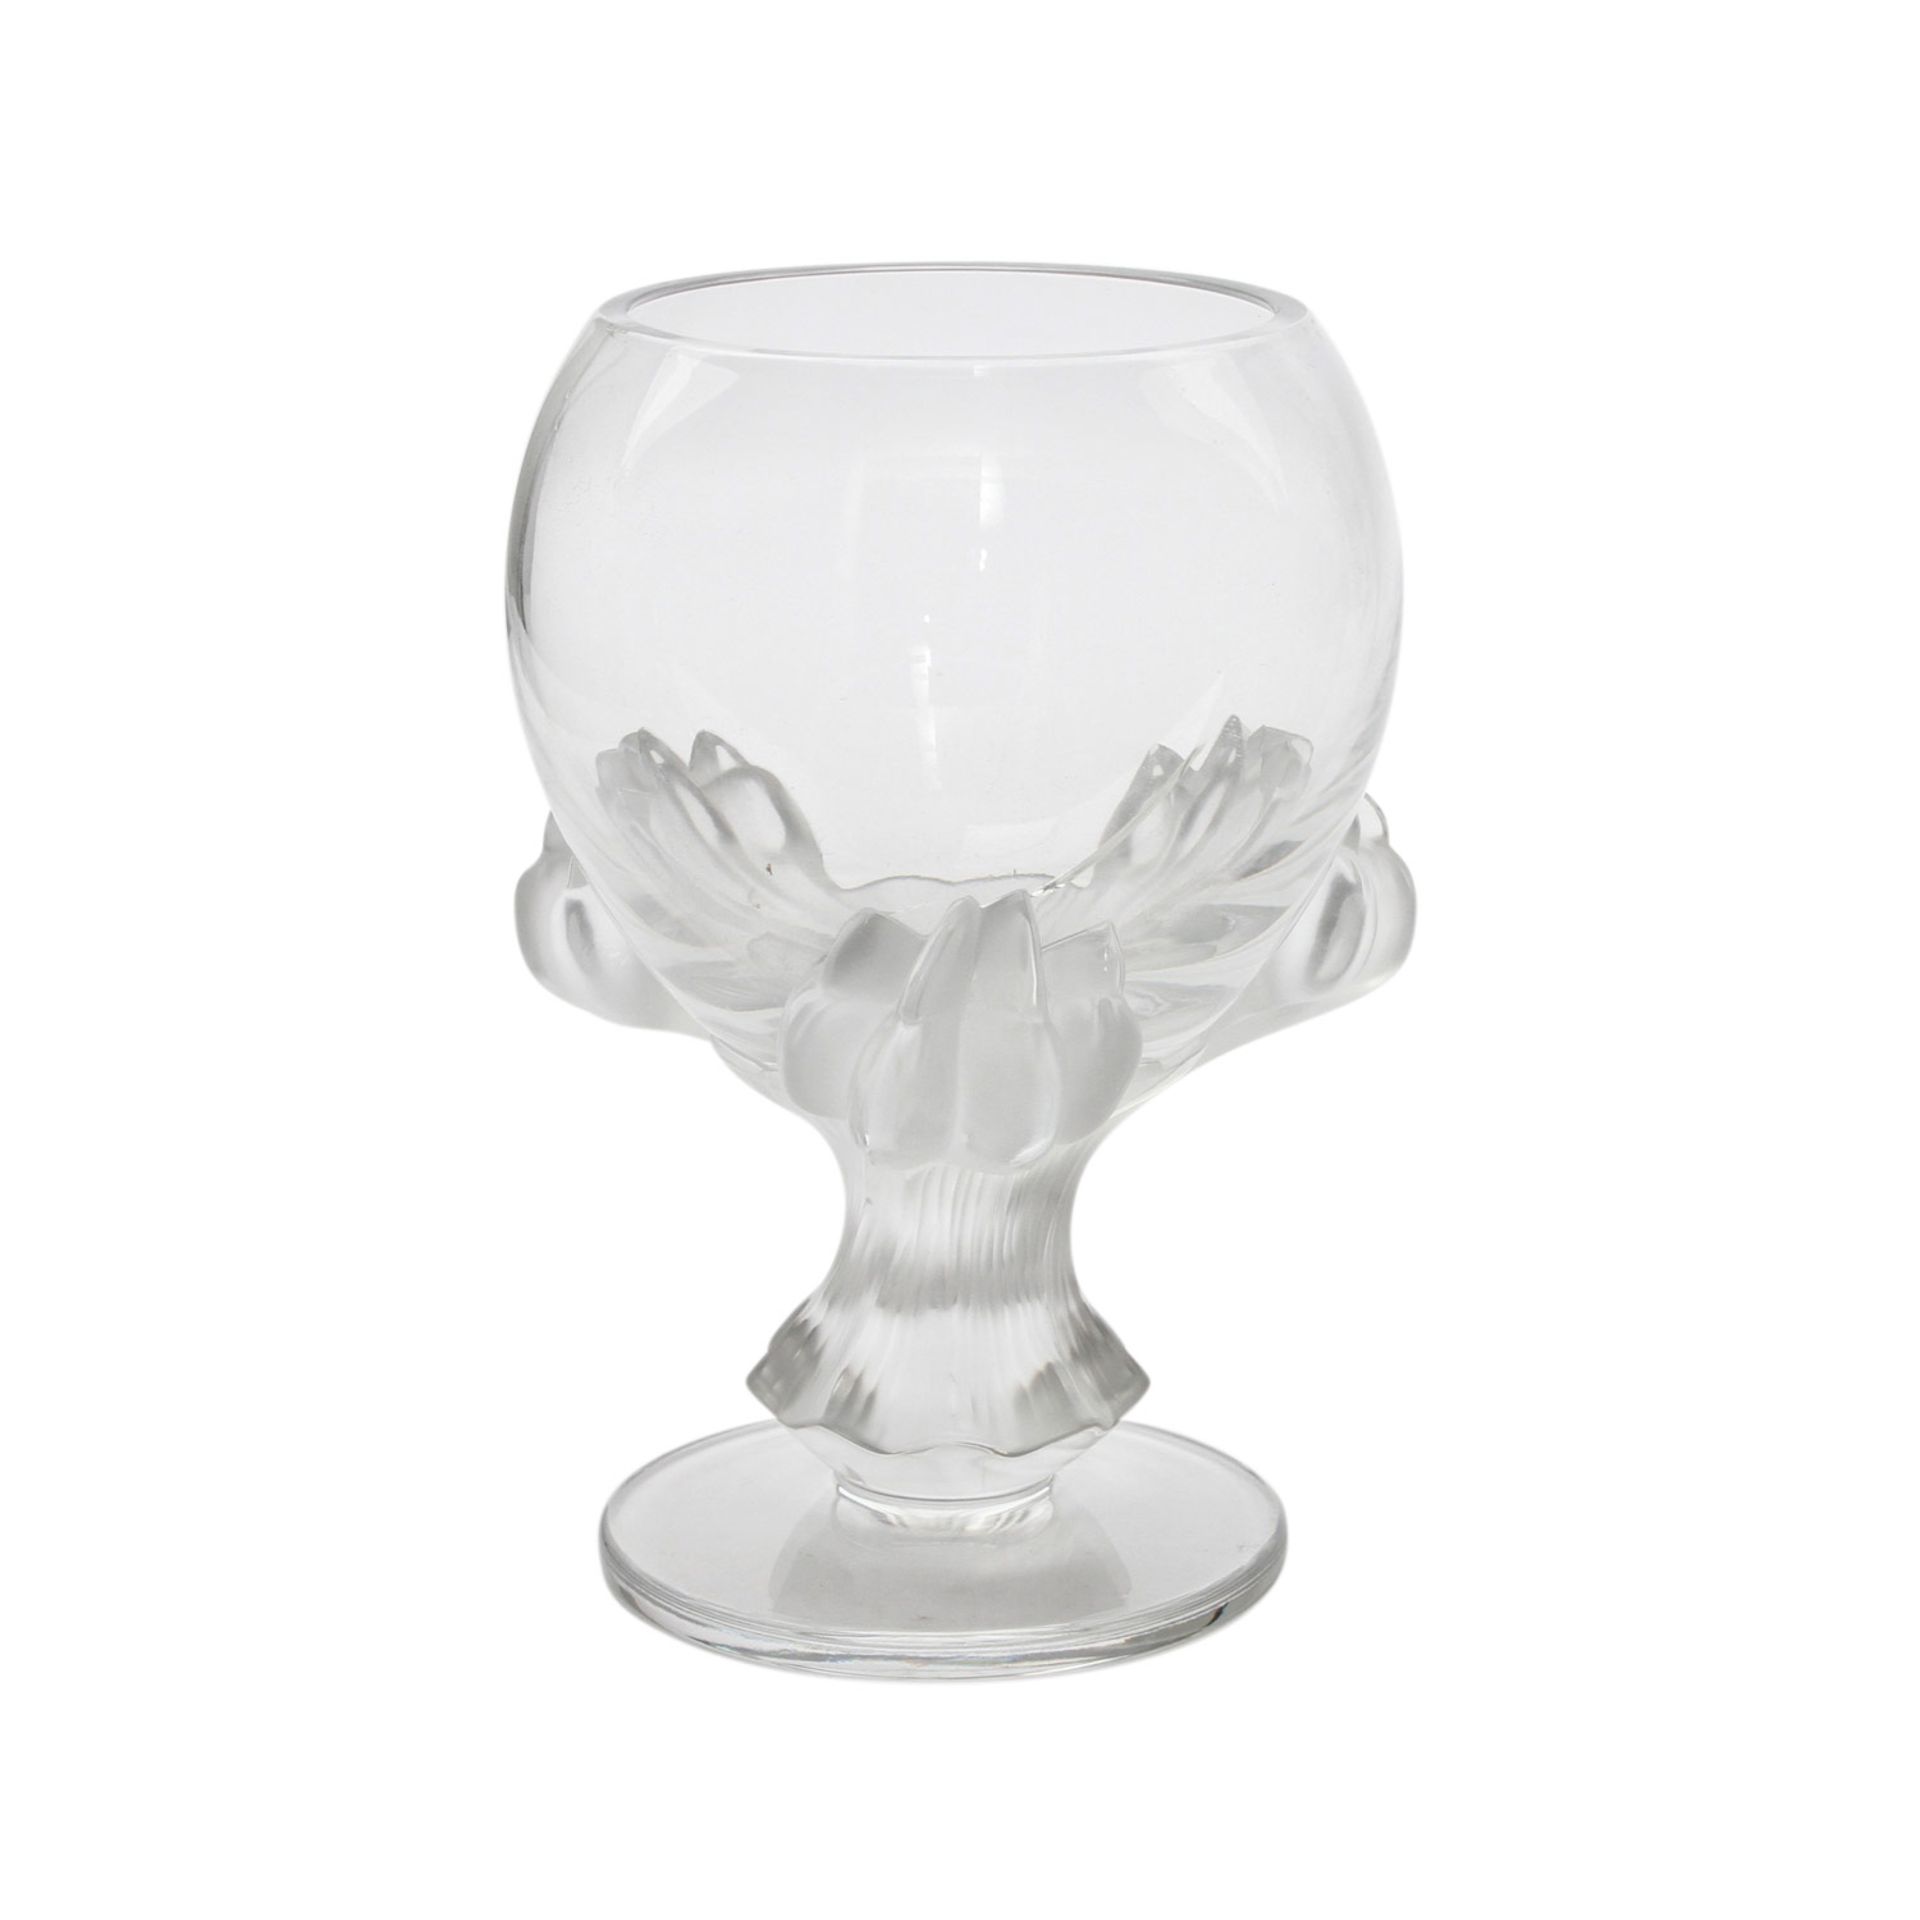 LALIQUE GLASPOKAL Frankreich, farbloses Kristallglas, von drei satinierten Klauenfüßen getragene, - Image 2 of 7